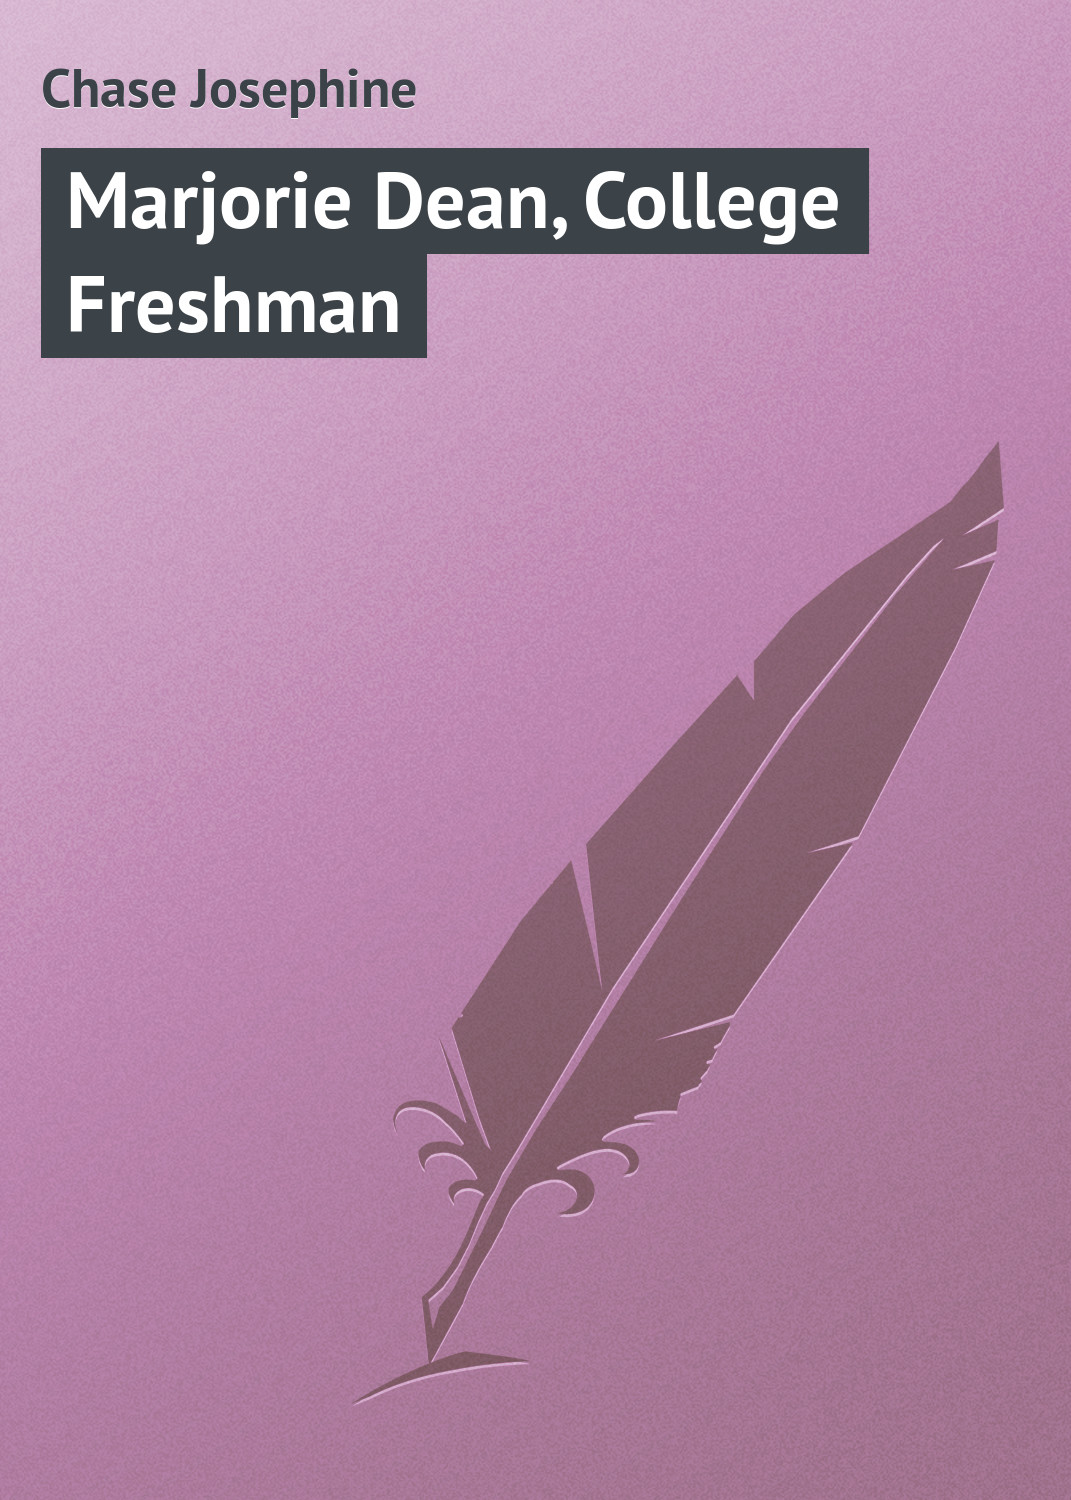 Книга Marjorie Dean, College Freshman из серии , созданная Chase Josephine, может относится к жанру Зарубежная классика. Стоимость электронной книги Marjorie Dean, College Freshman с идентификатором 23166947 составляет 5.99 руб.